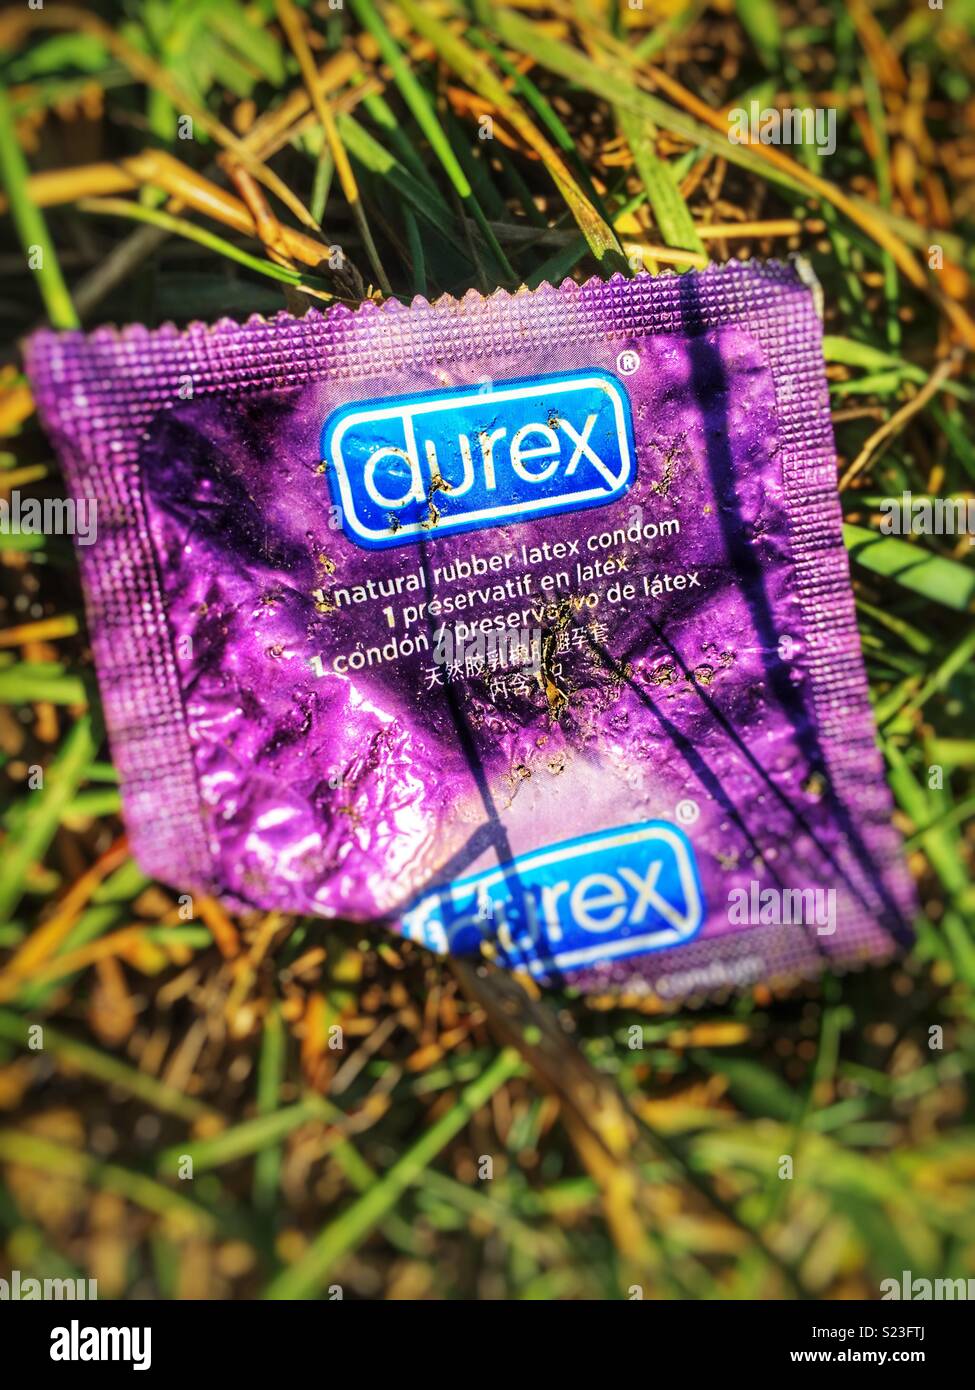 used-condom-packet-S23FTJ.jpg